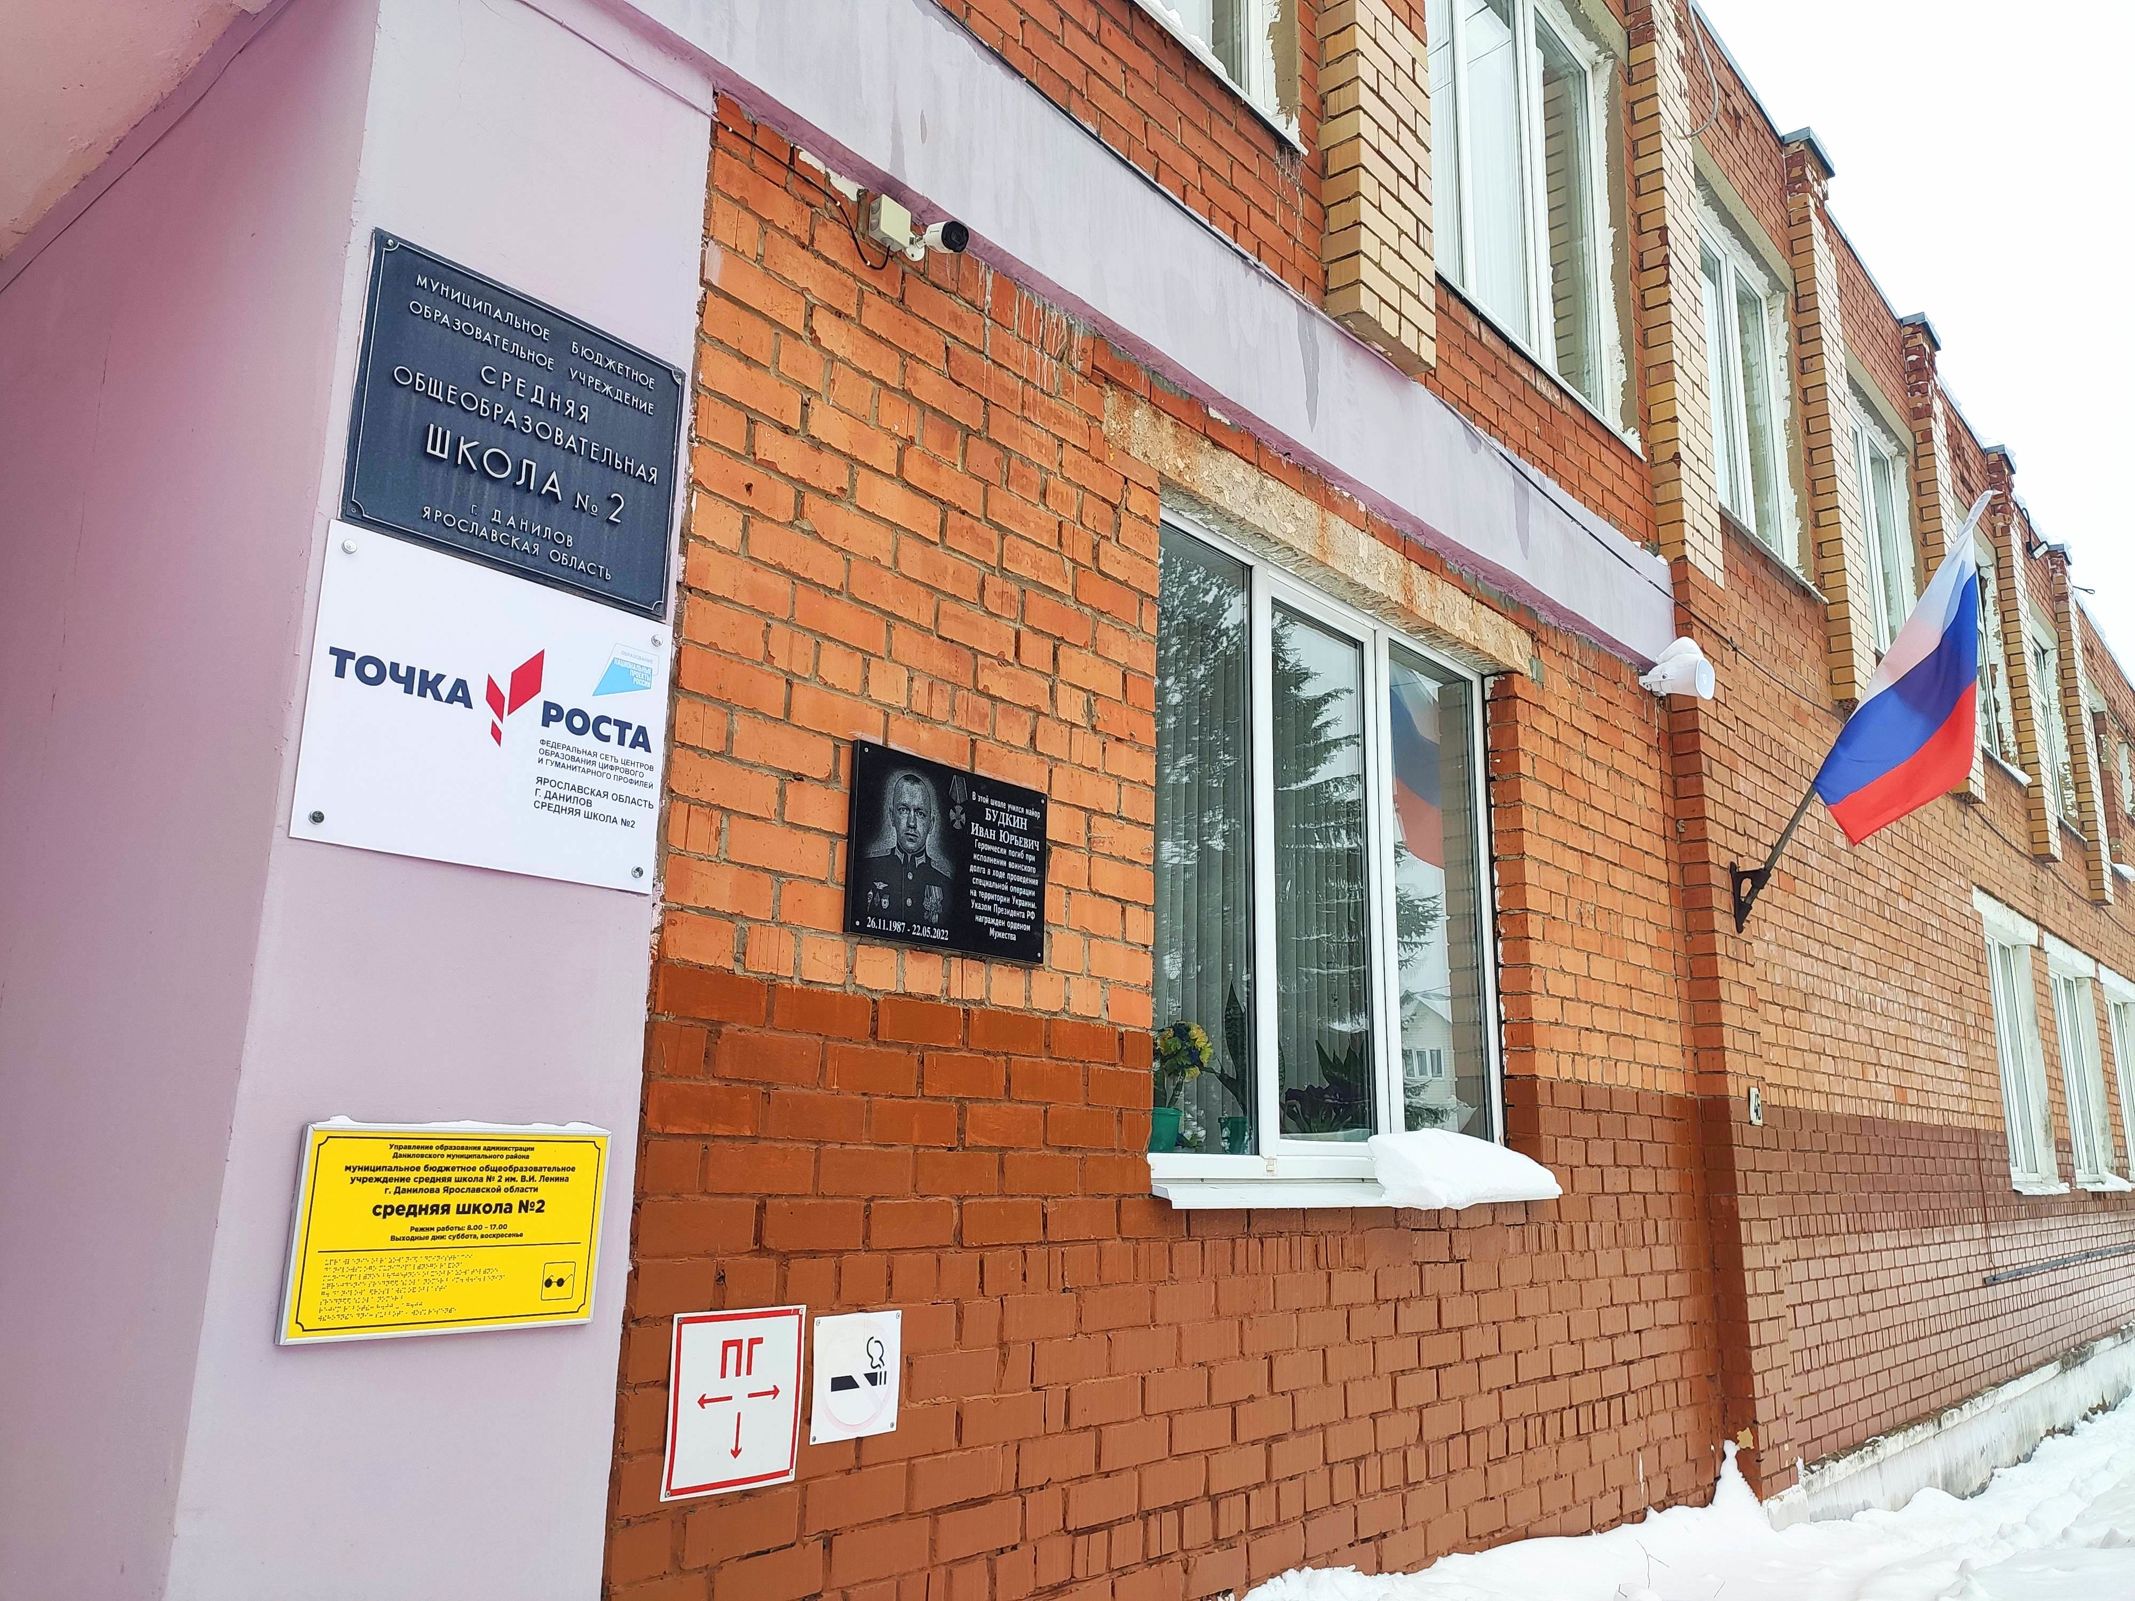 Работы по повышению безопасности провели в двух школах Данилова